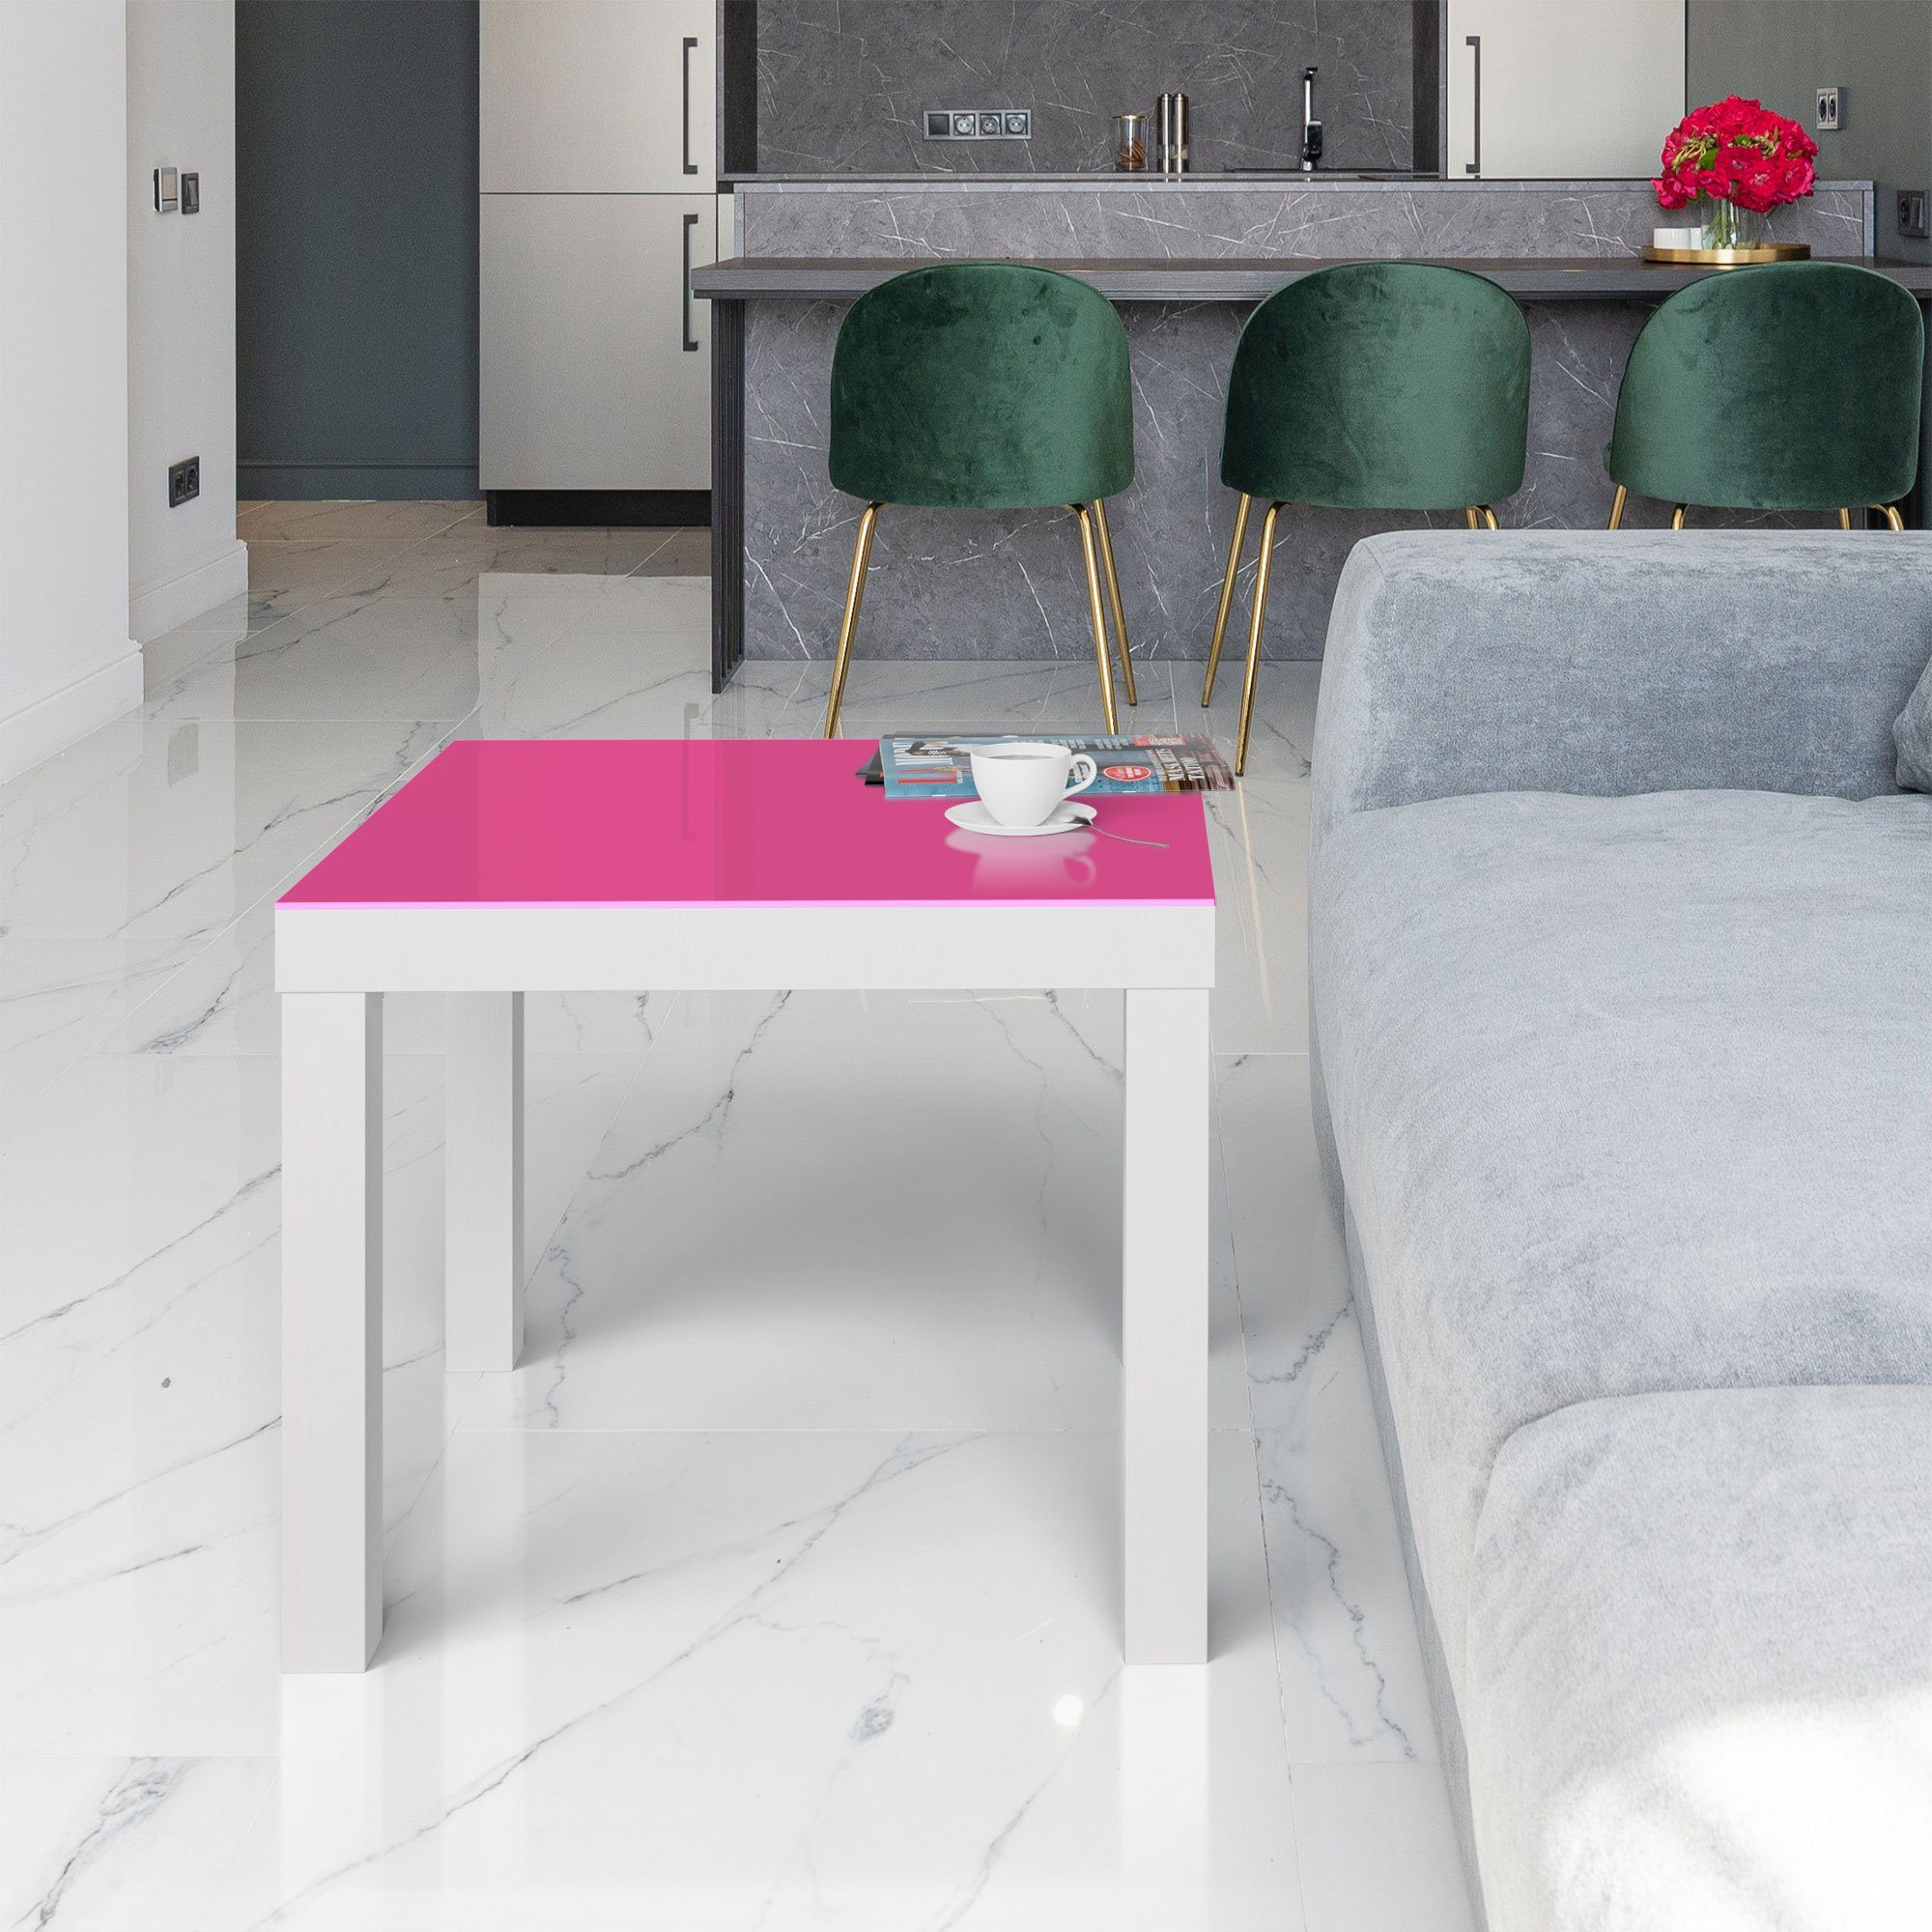 Glas - DEQORI modern Beistelltisch Rosa', Couchtisch Glastisch 'Unifarben Weiß